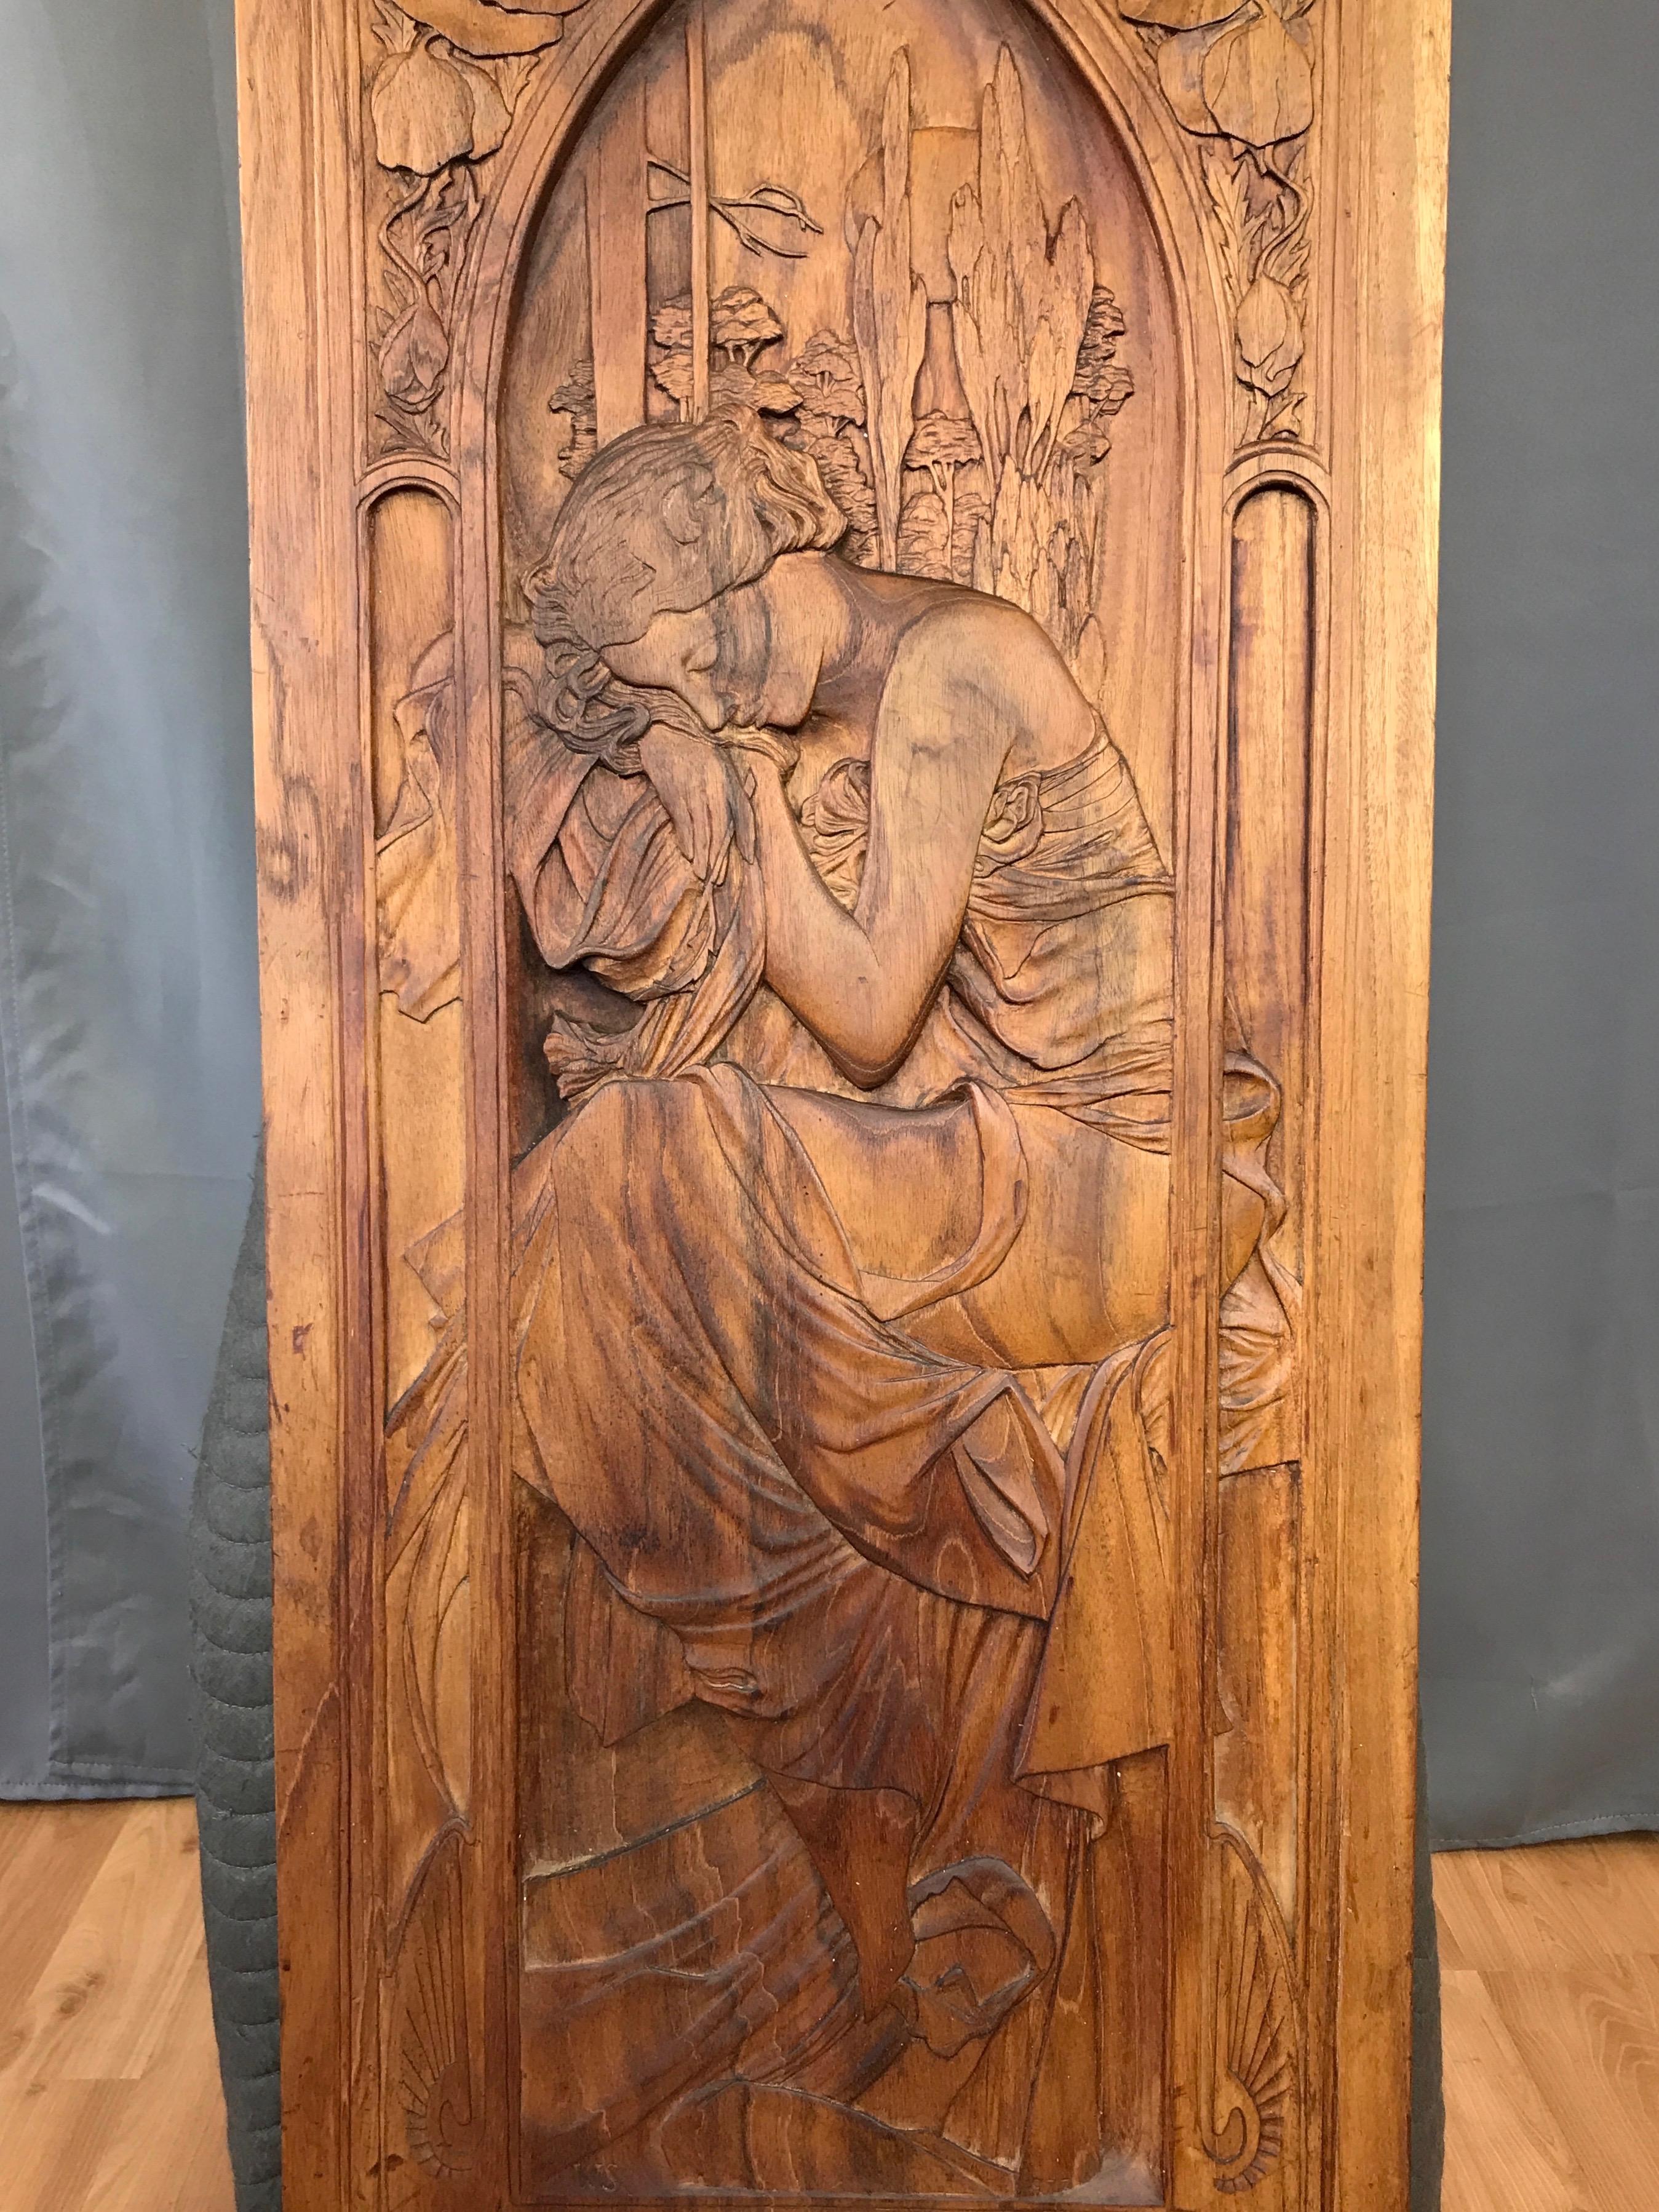 American Art Nouveau Carved Wood Panel after Alphonse Mucha’s “Repos de la Nuit”